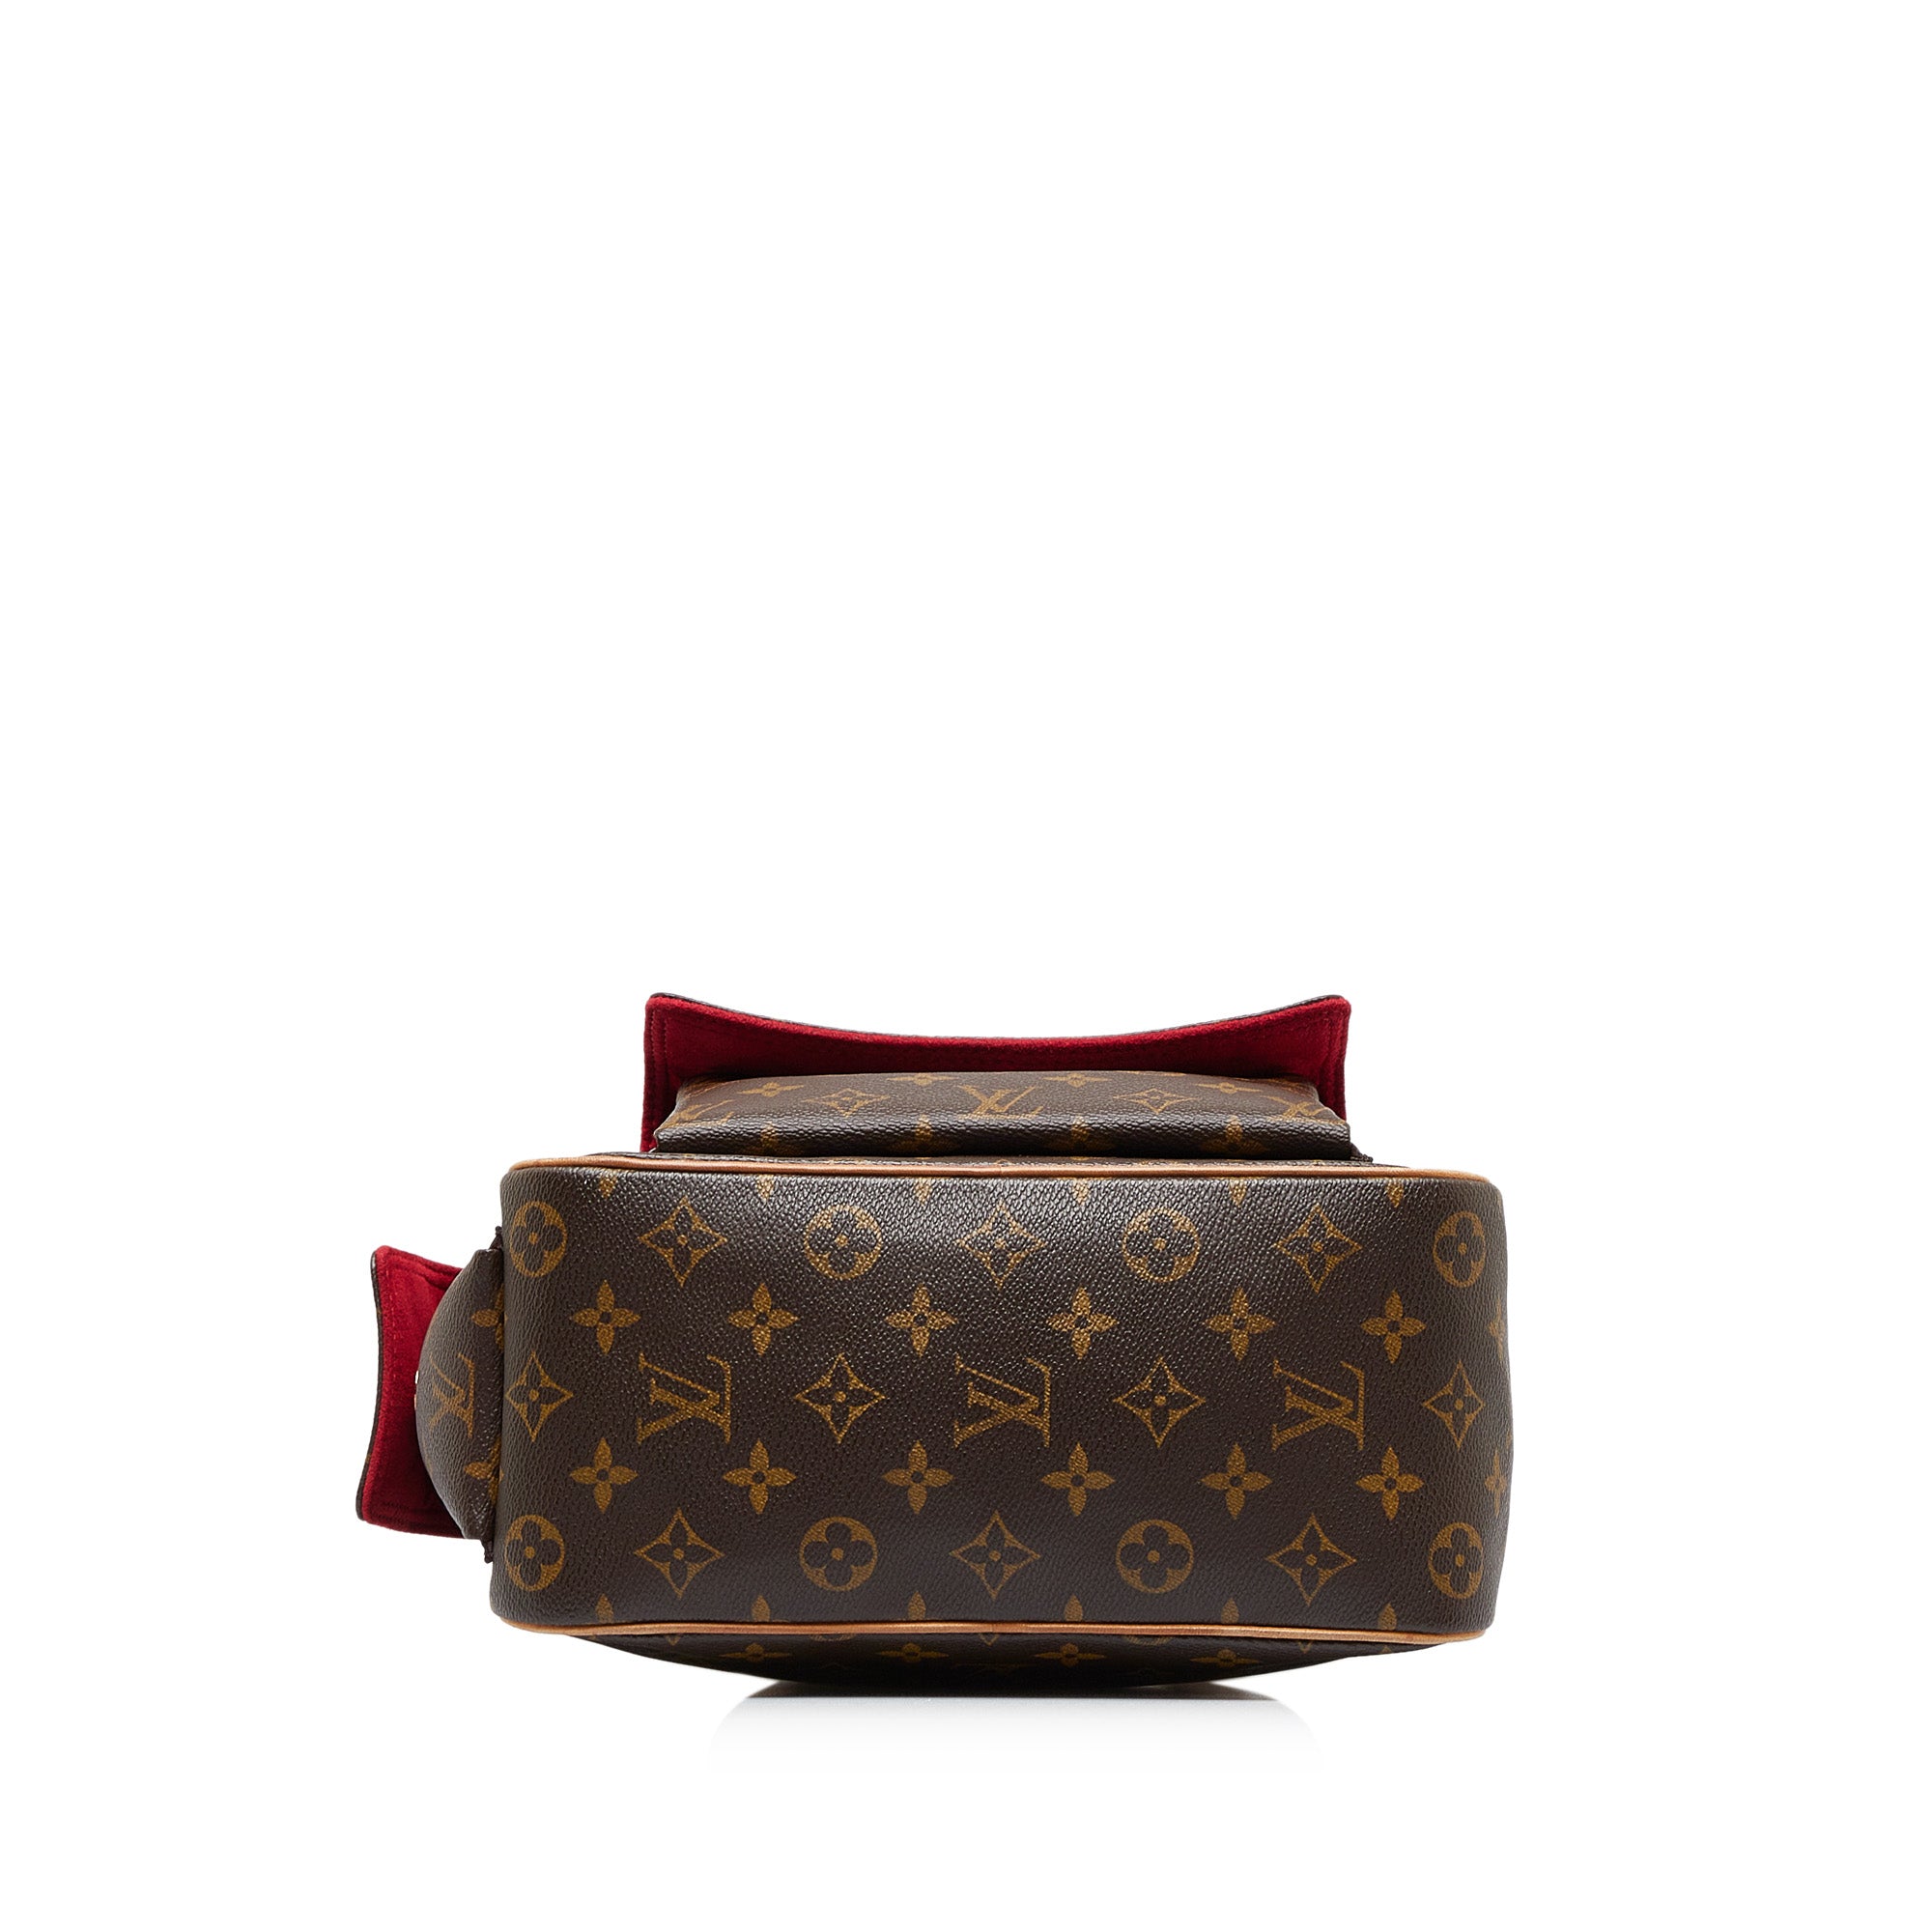 Shop for Louis Vuitton Monogram Canvas Leather Excentri Cite